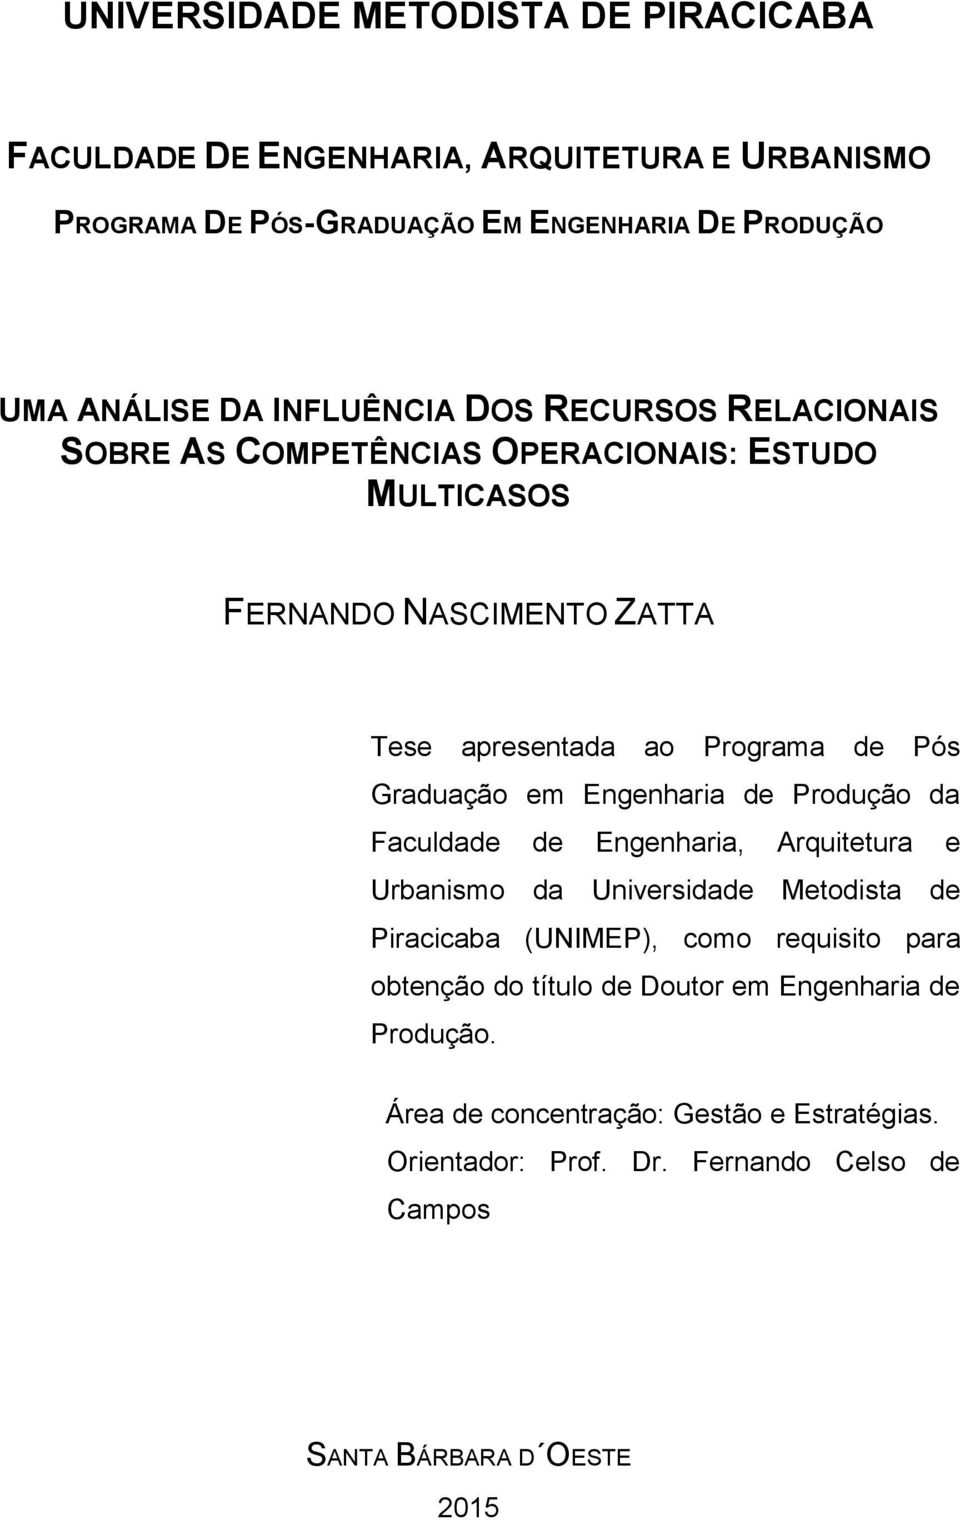 Graduação em Engenharia de Produção da Faculdade de Engenharia, Arquitetura e Urbanismo da Universidade Metodista de Piracicaba (UNIMEP), como requisito para